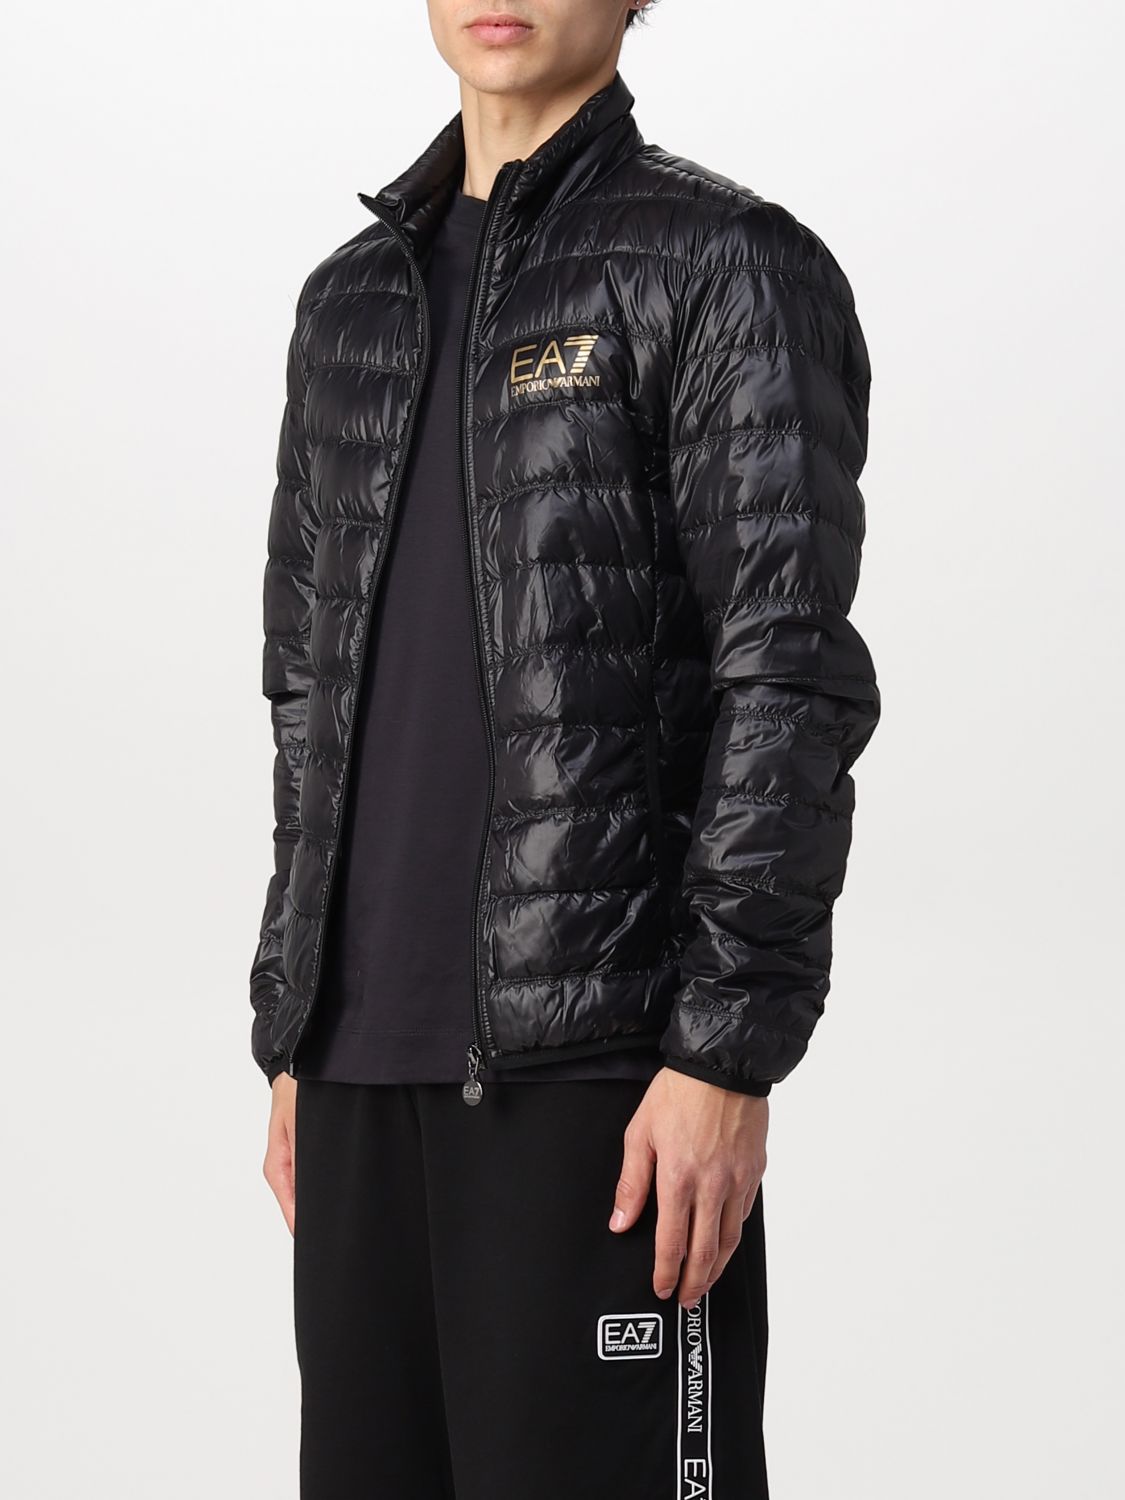 Jacket Ea7: Ea7 jacket for man black 3